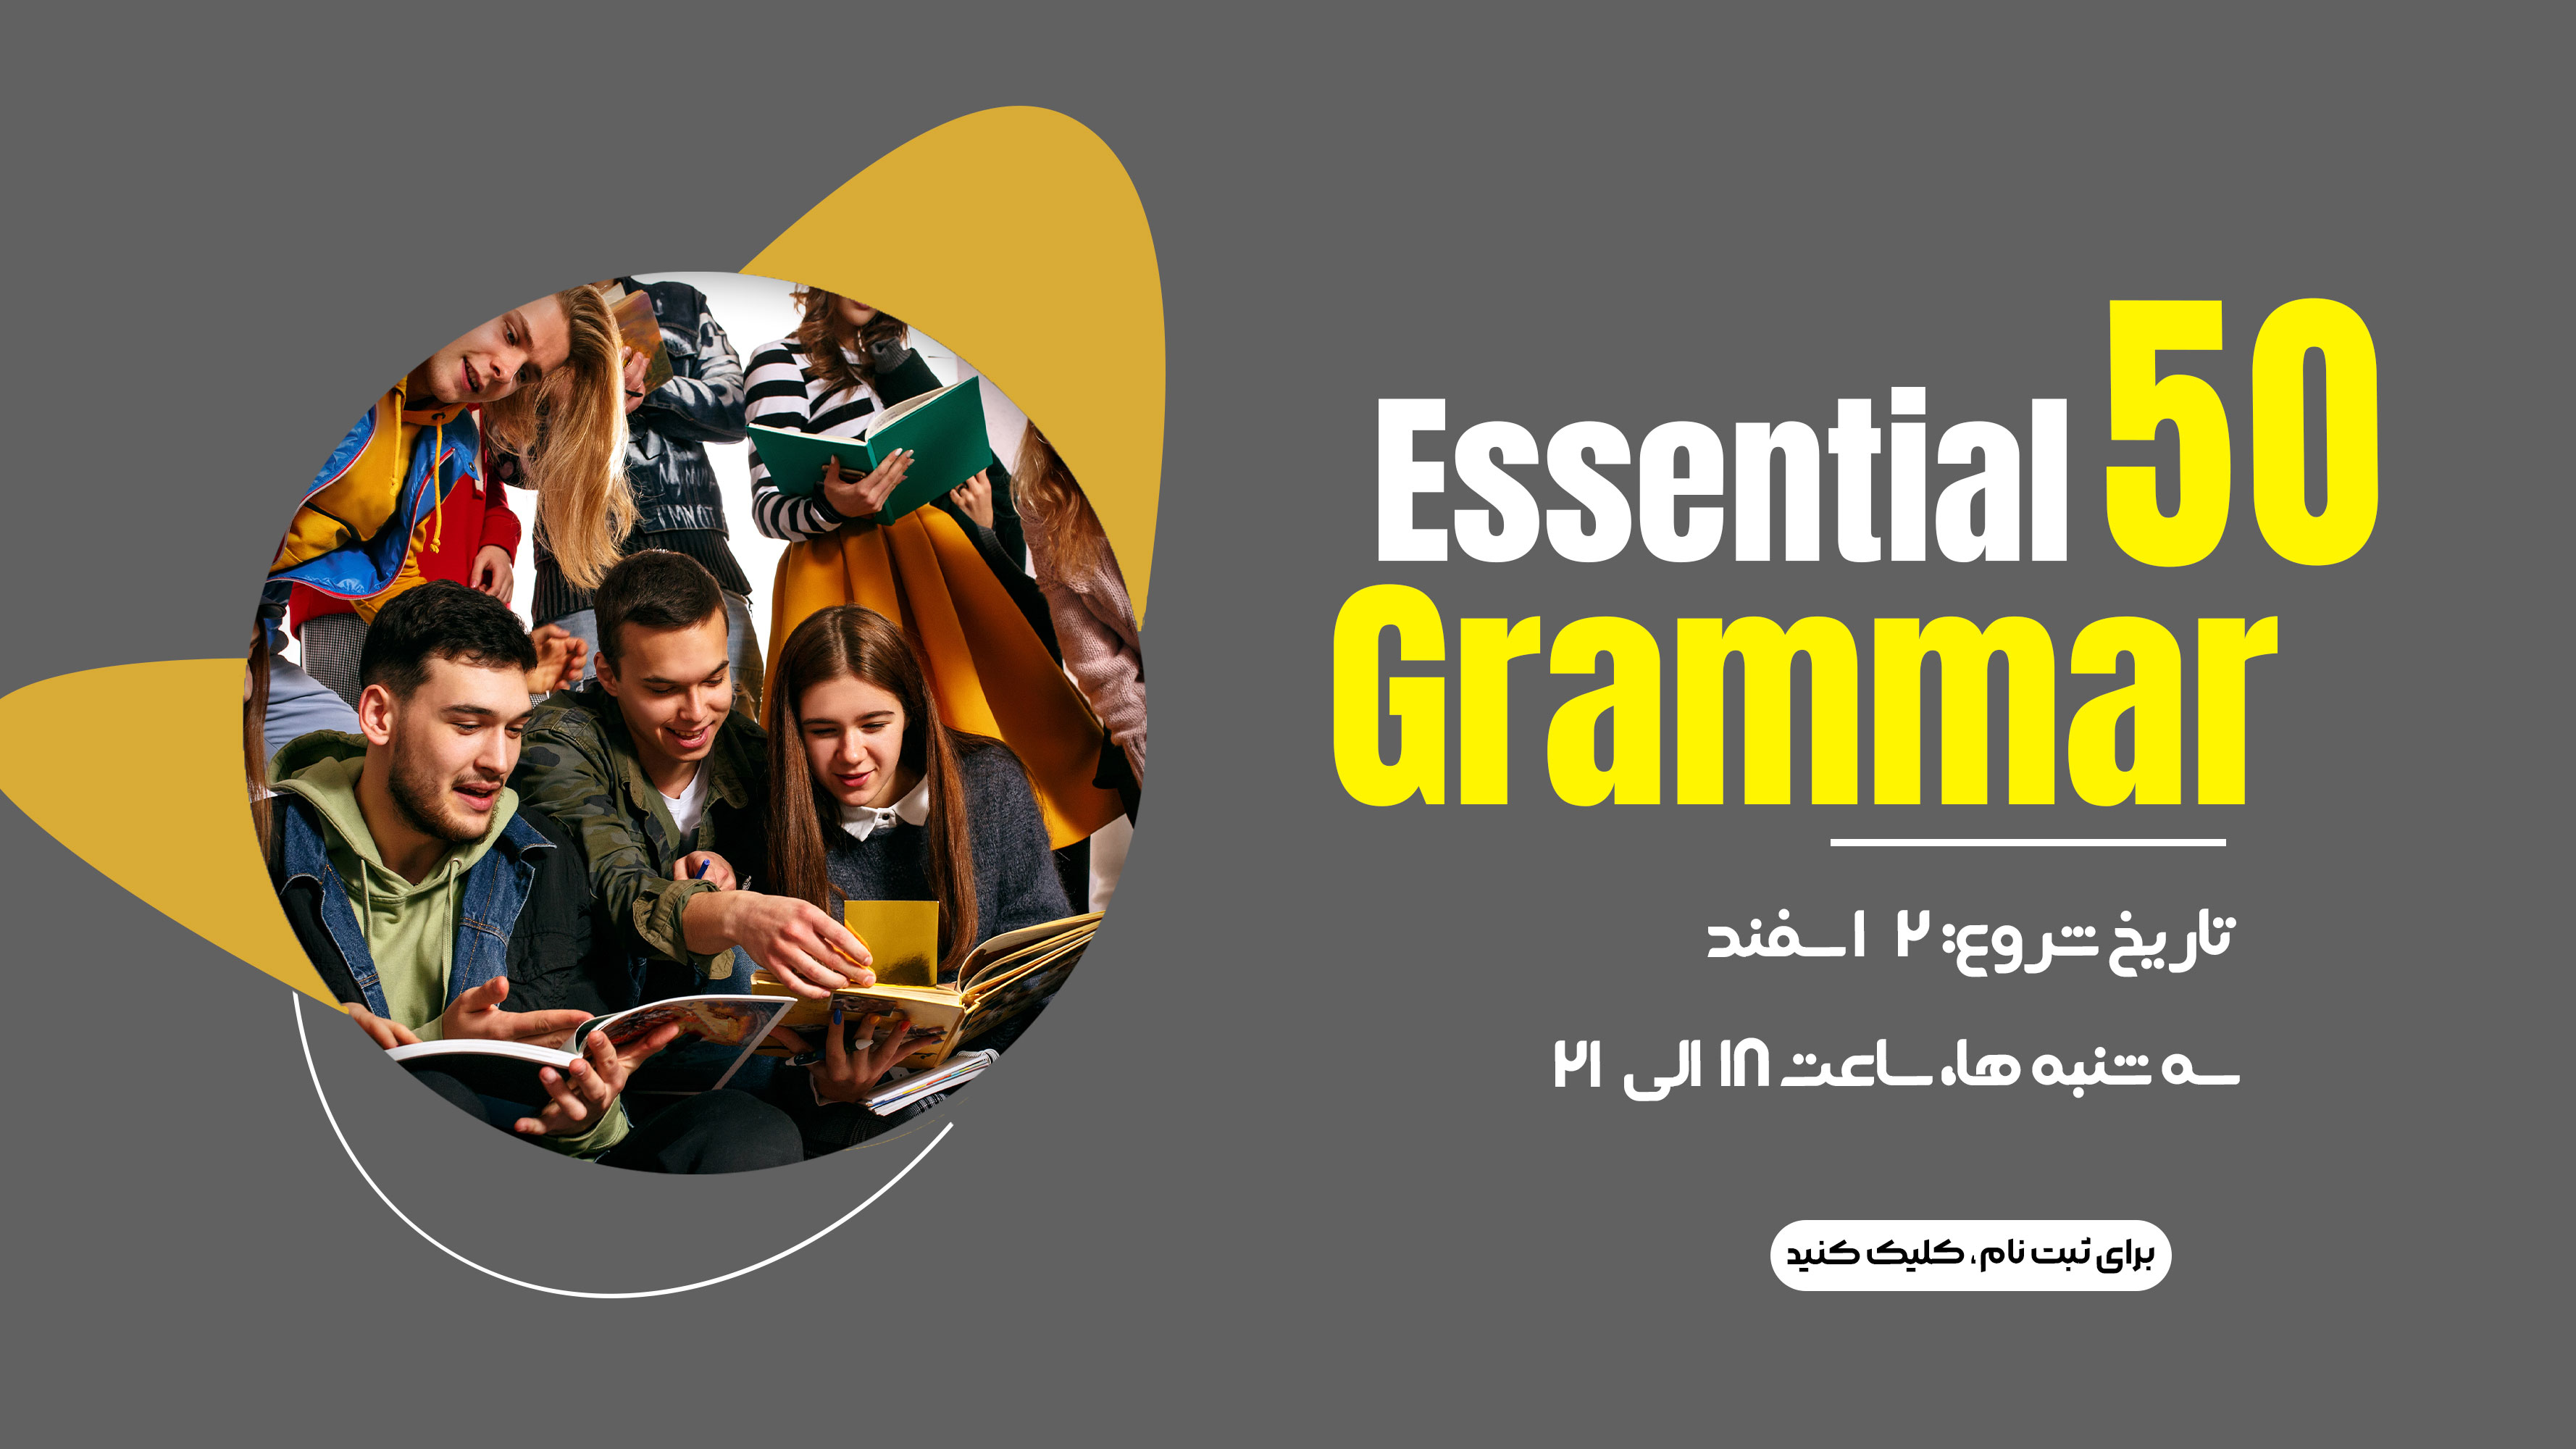 Essential Grammar 50